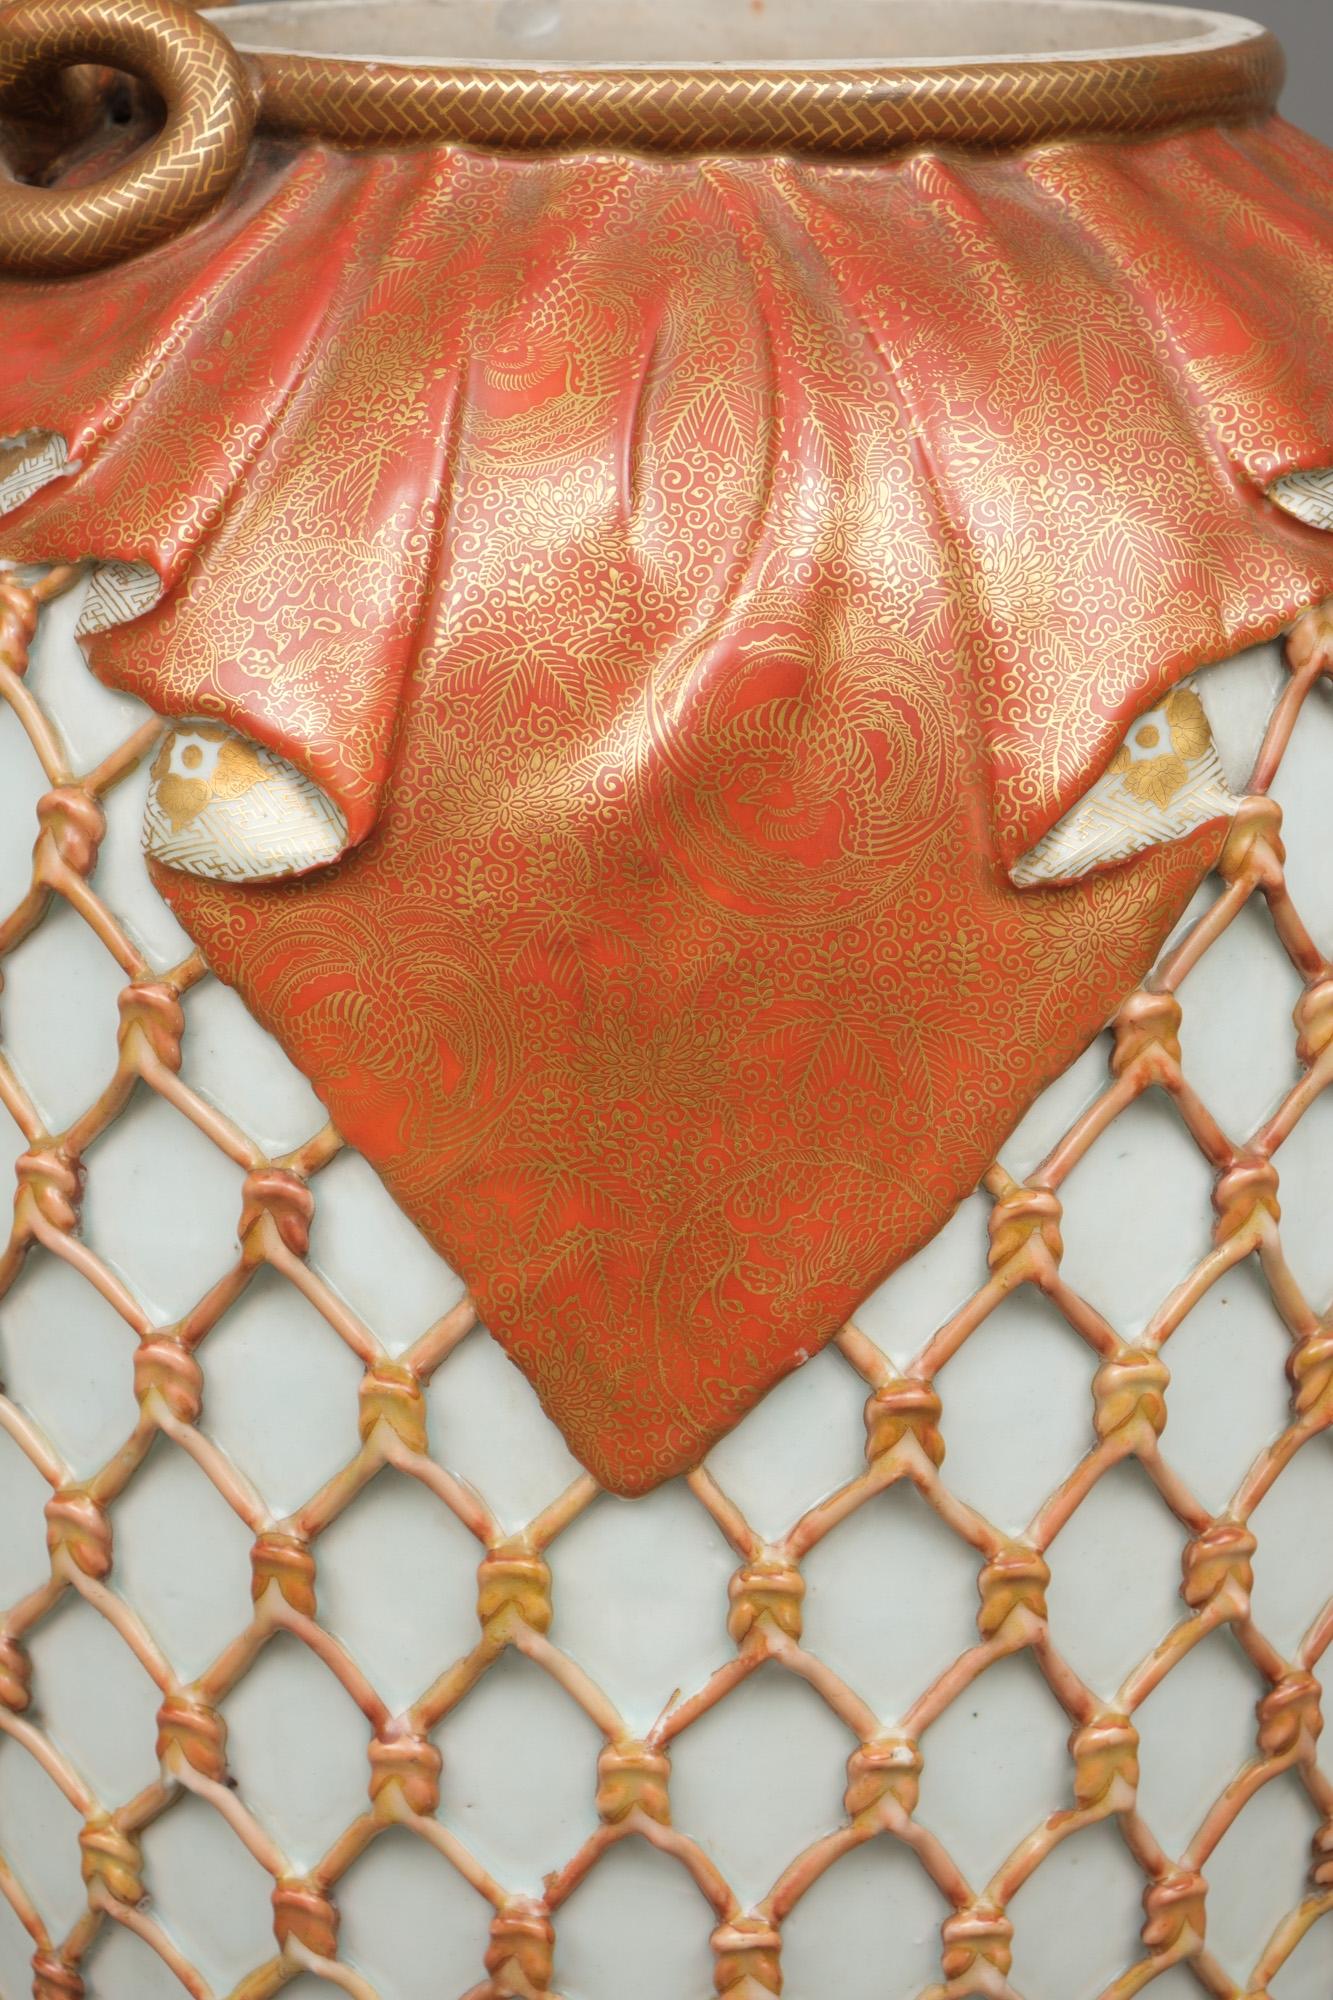 Hoher und außergewöhnlich gearbeiteter Kyo-Porzellankrug (Tsubo) mit einem naturalistischen Reliefmuster eines korallenfarbenen Netzes, das um den Körper gespannt ist. An der Schulter hängt ein wunderschön drapiertes, rot glasiertes Tuch mit einem